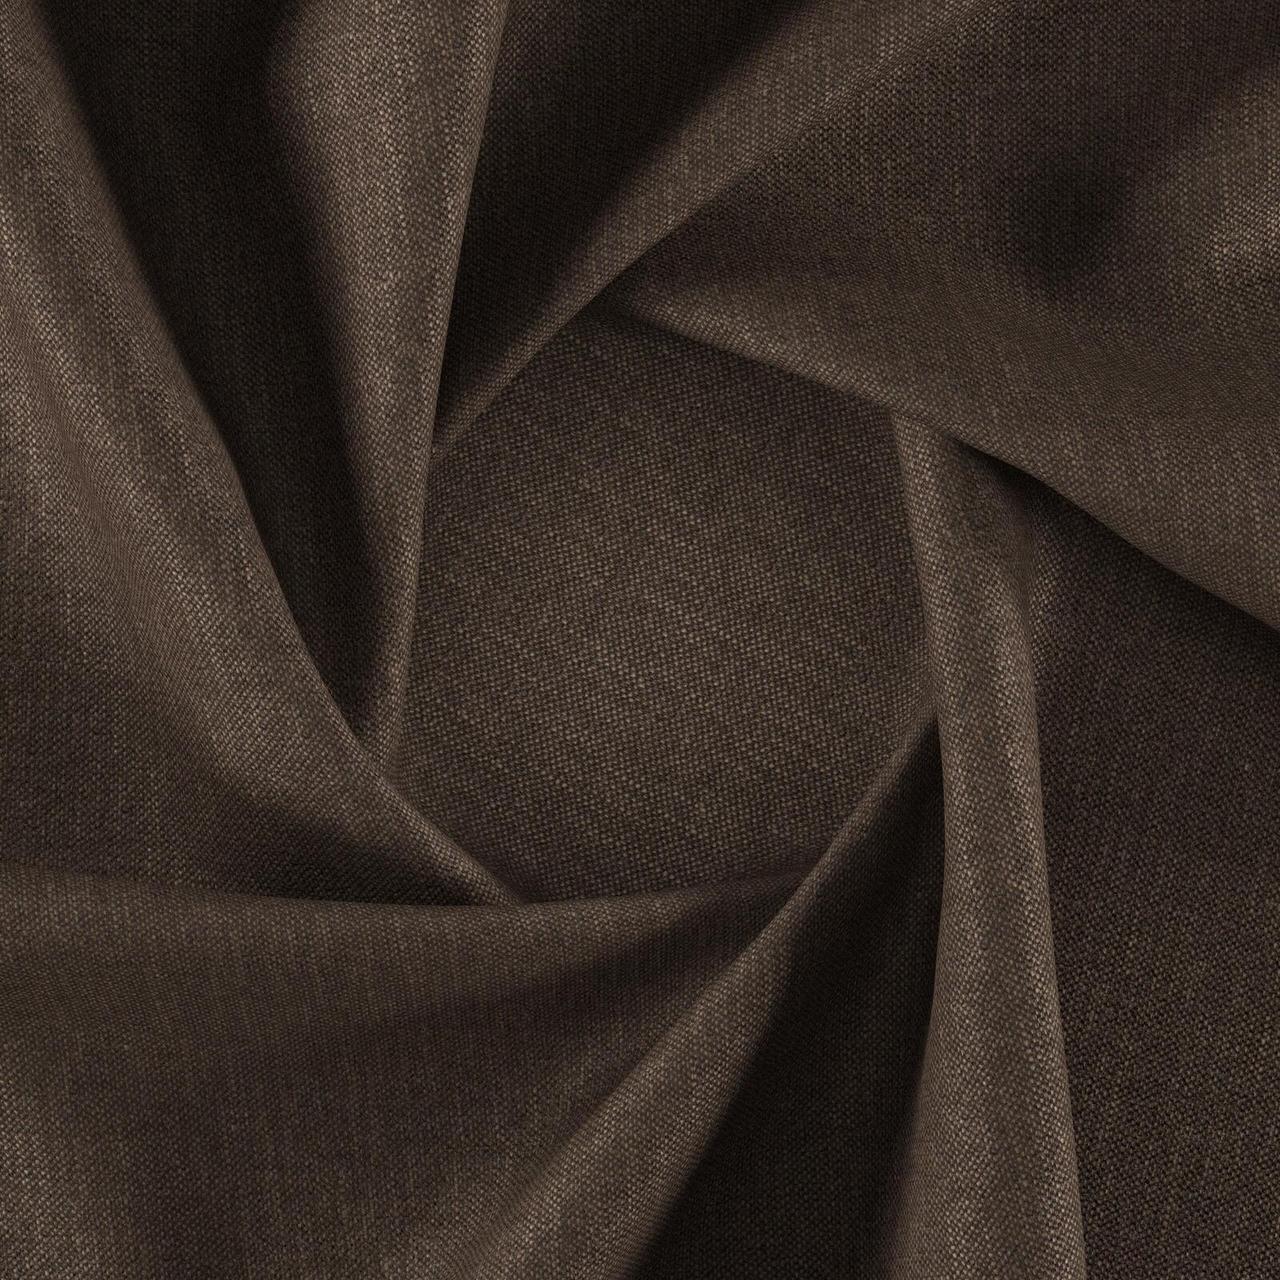 Тканина для перетяжки м'яких меблів шеніл Перфекто (Perfecto) коричневого кольору